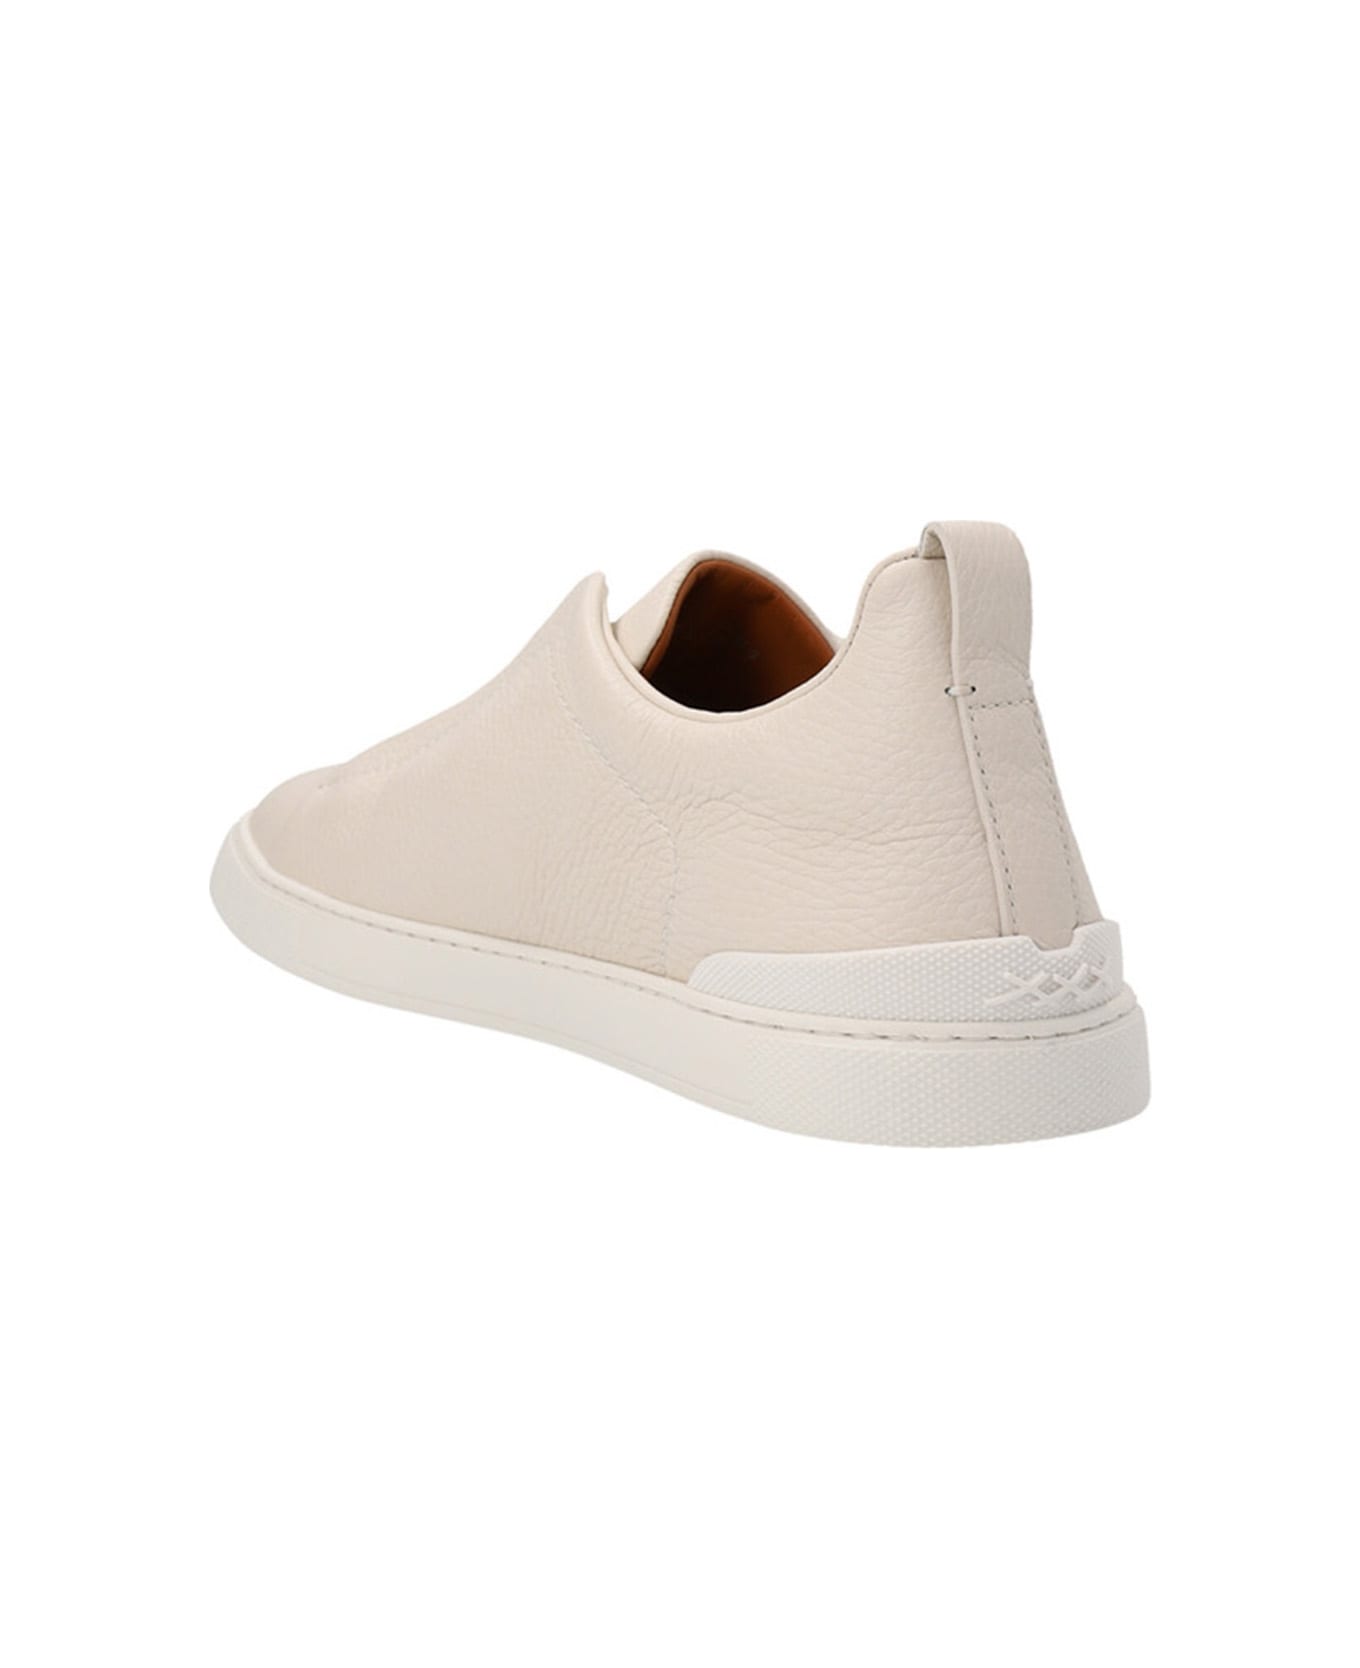 Zegna 'triple Stitch' Sneakers - White